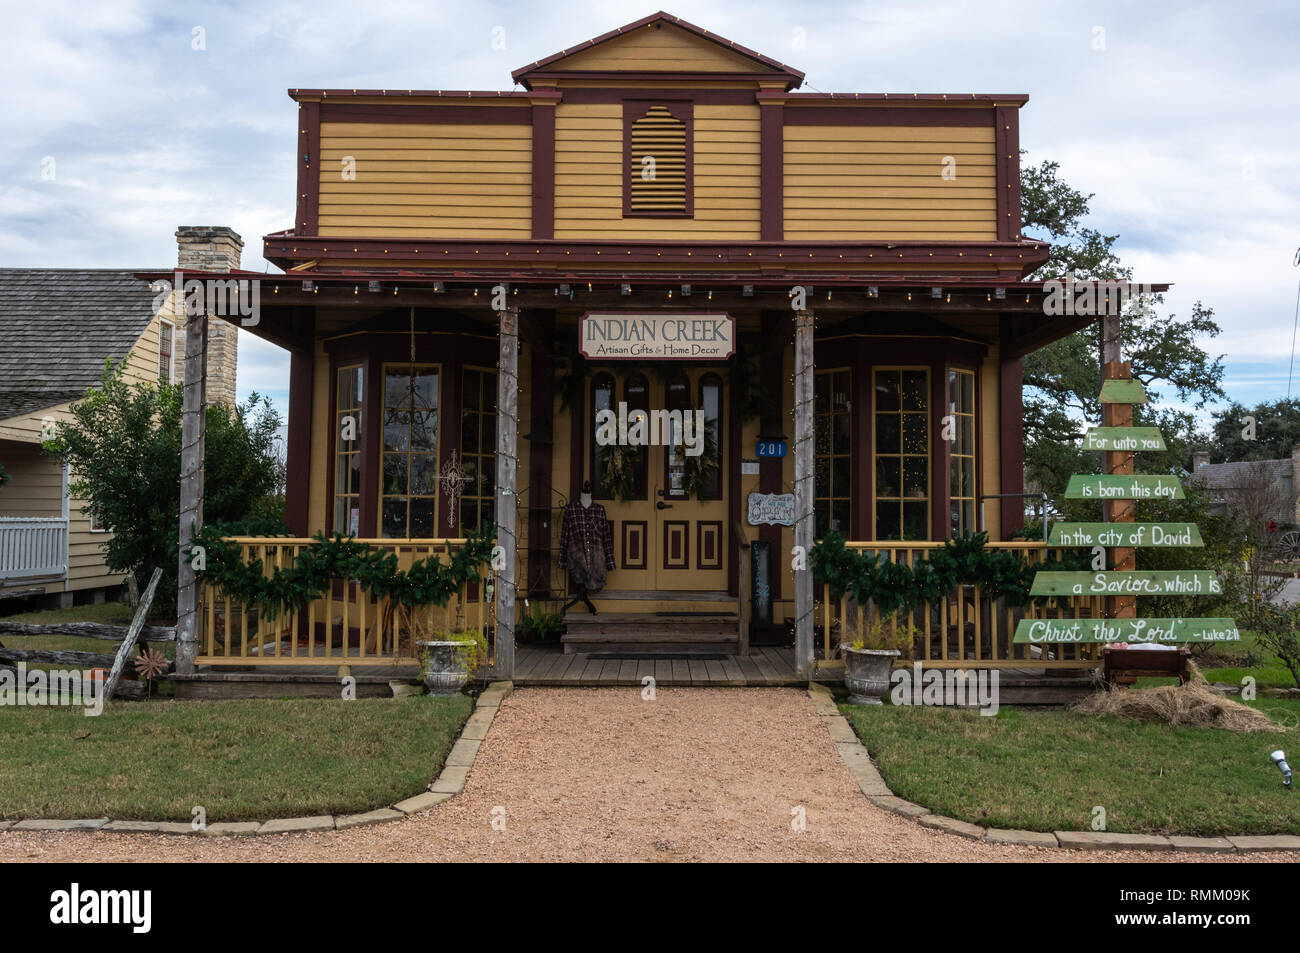 Runde Oberseite, Texas, Vereinigte Staaten von Amerika - 27. Dezember 2016. Indian Creek artisan Geschenke und Wohnkultur shop in Round Top, TX. Stockfoto